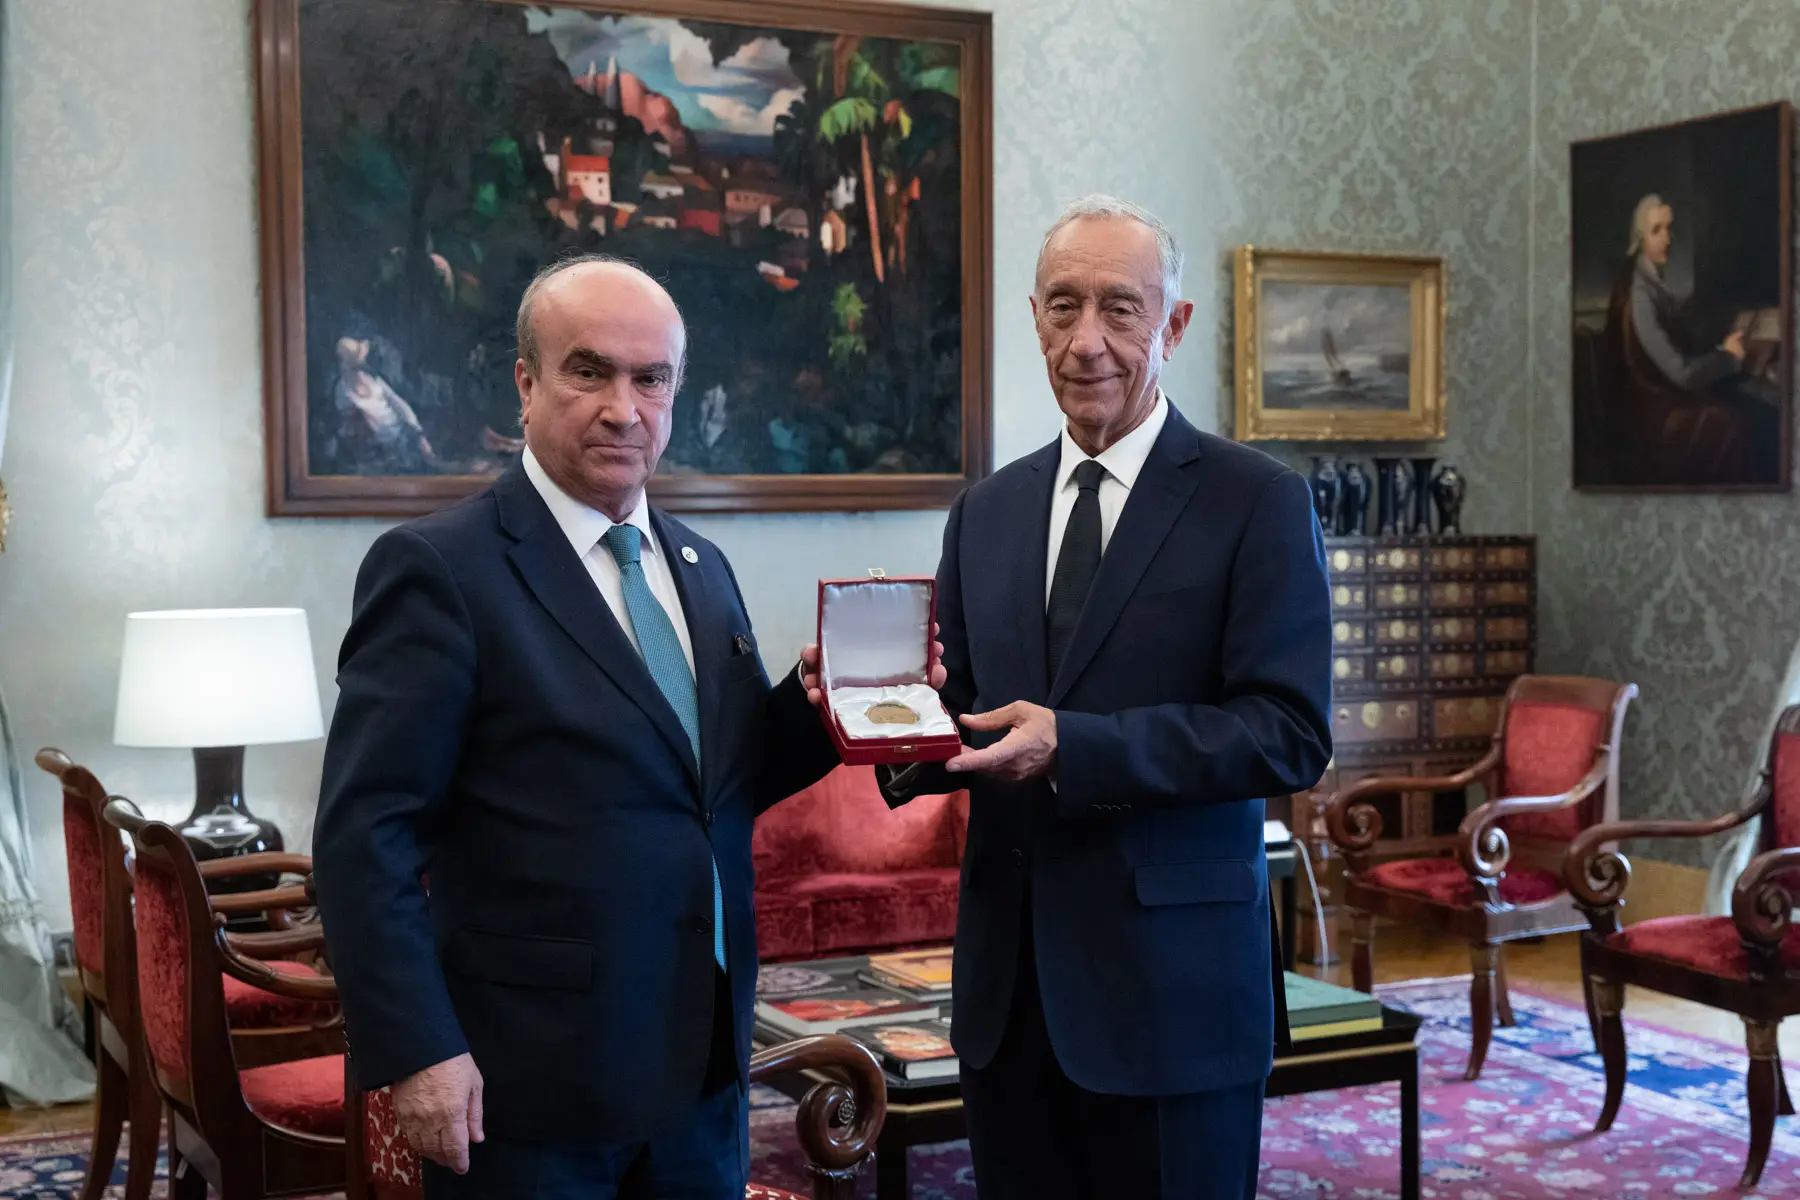 Mariano Jabonero atribuiu a Medalha de Honra da OEI a Marcelo Rebelo de Sousa “em reconhecimento do seu contributo para a consolidação do espaço ibero-americano”